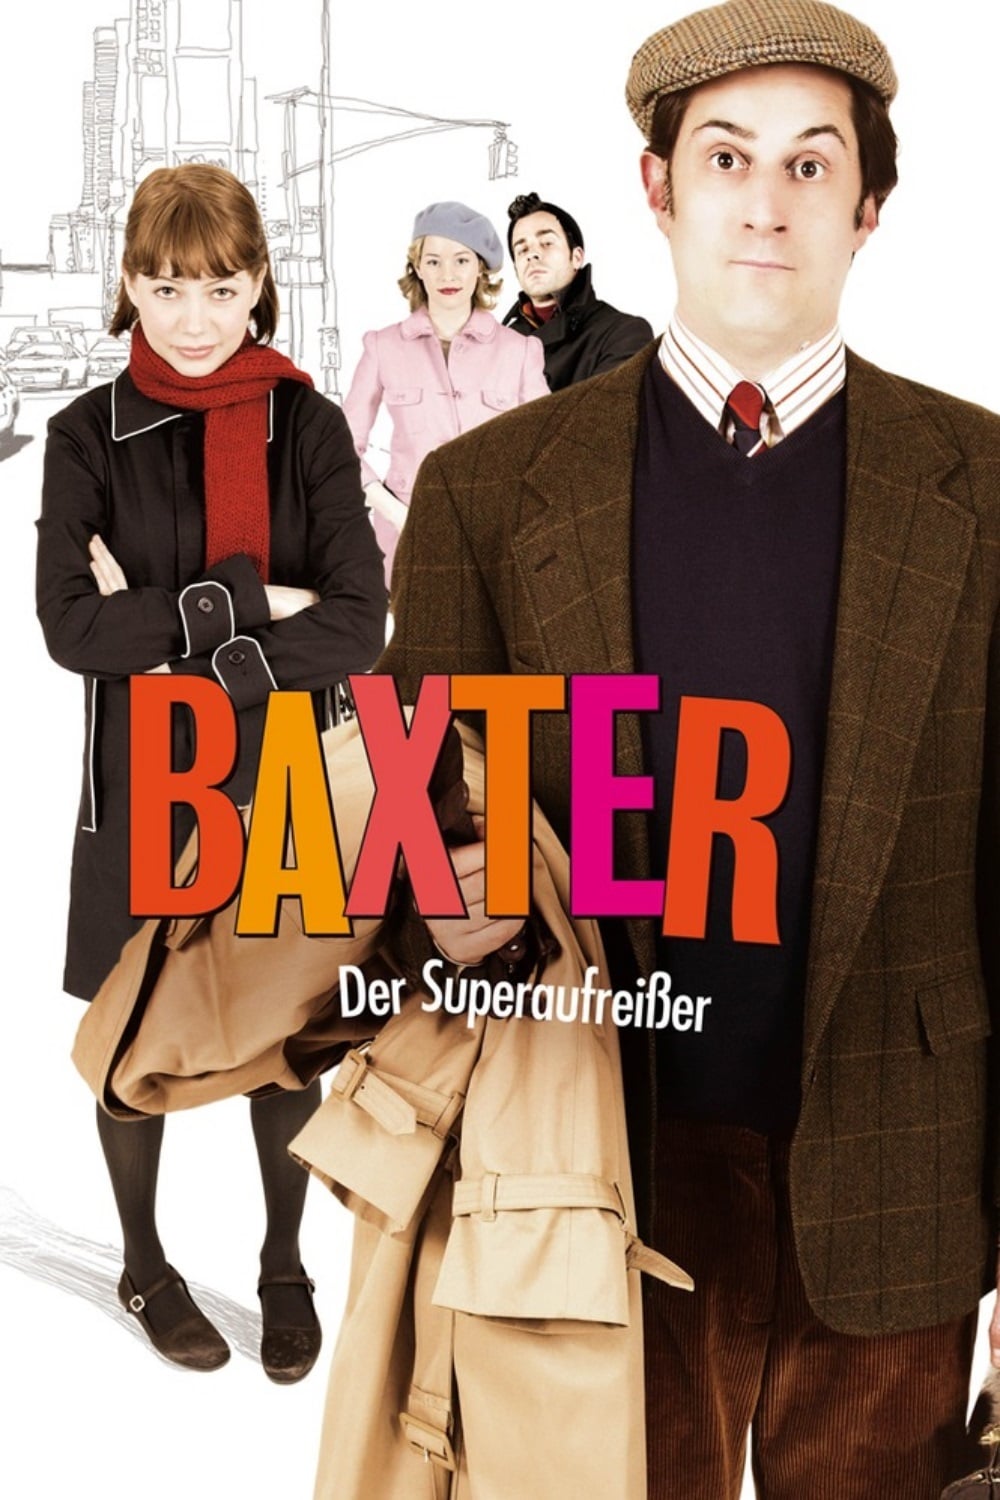 Plakat von "Baxter – Der Superaufreißer"